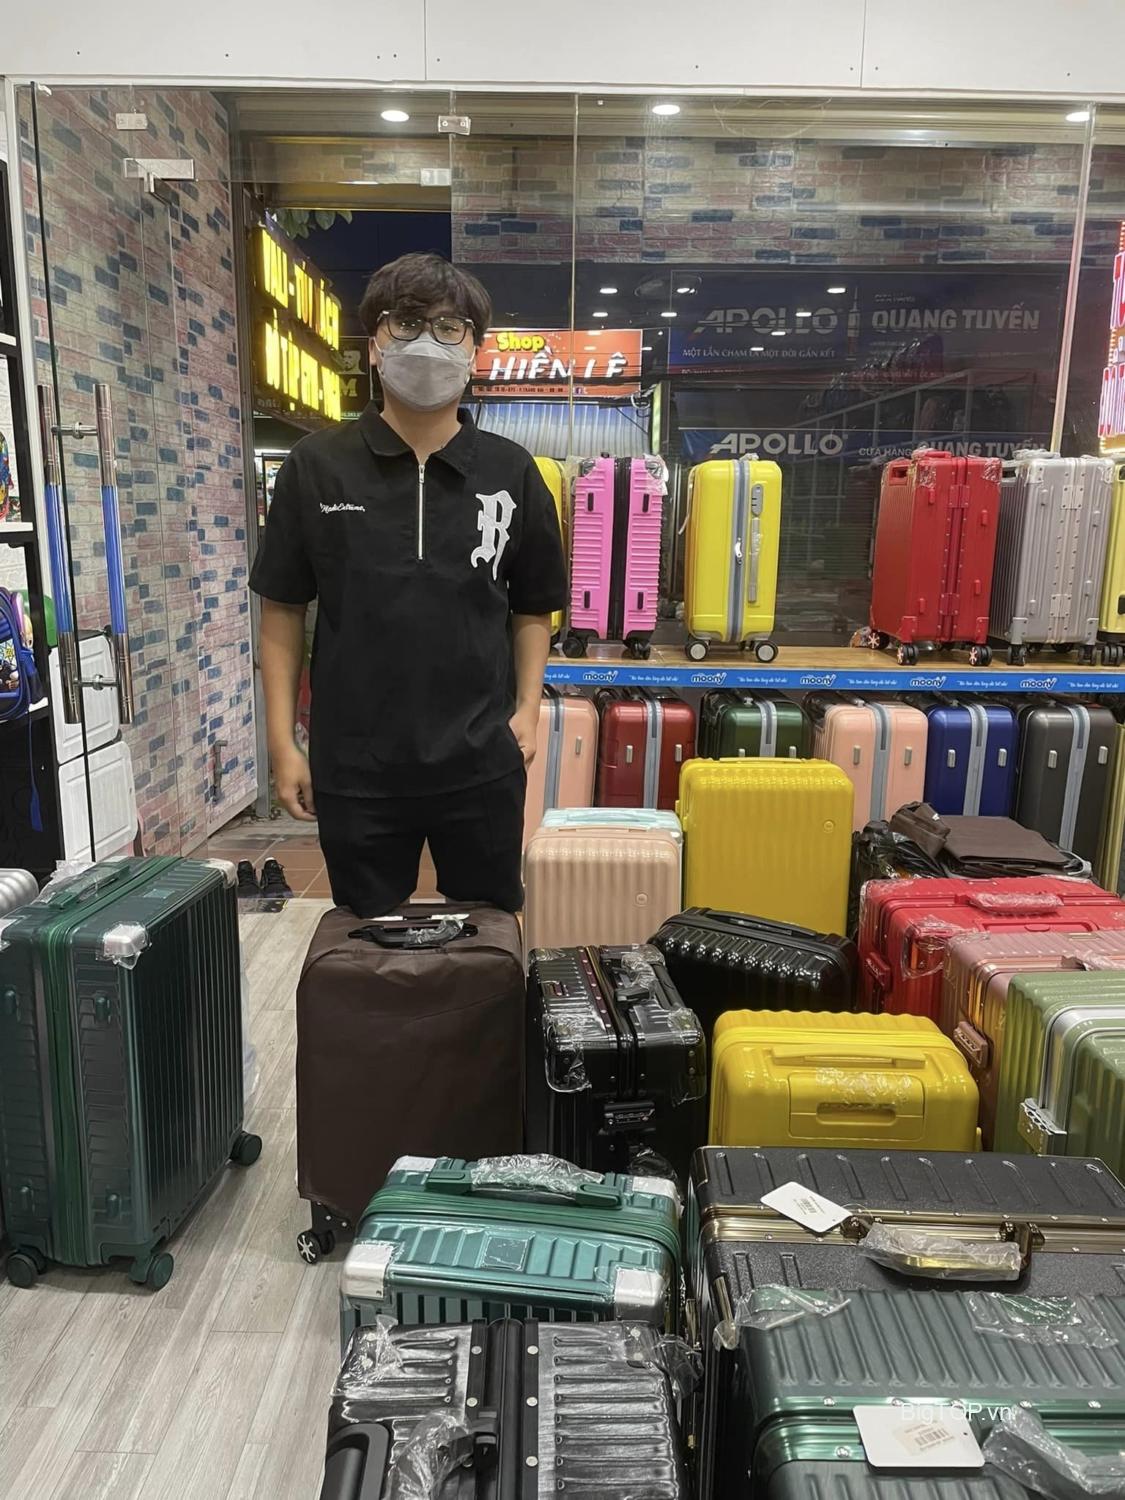 Mua vali ở đâu giá rẻ chất lượng tại Biên Hòa, Đồng Nai ?